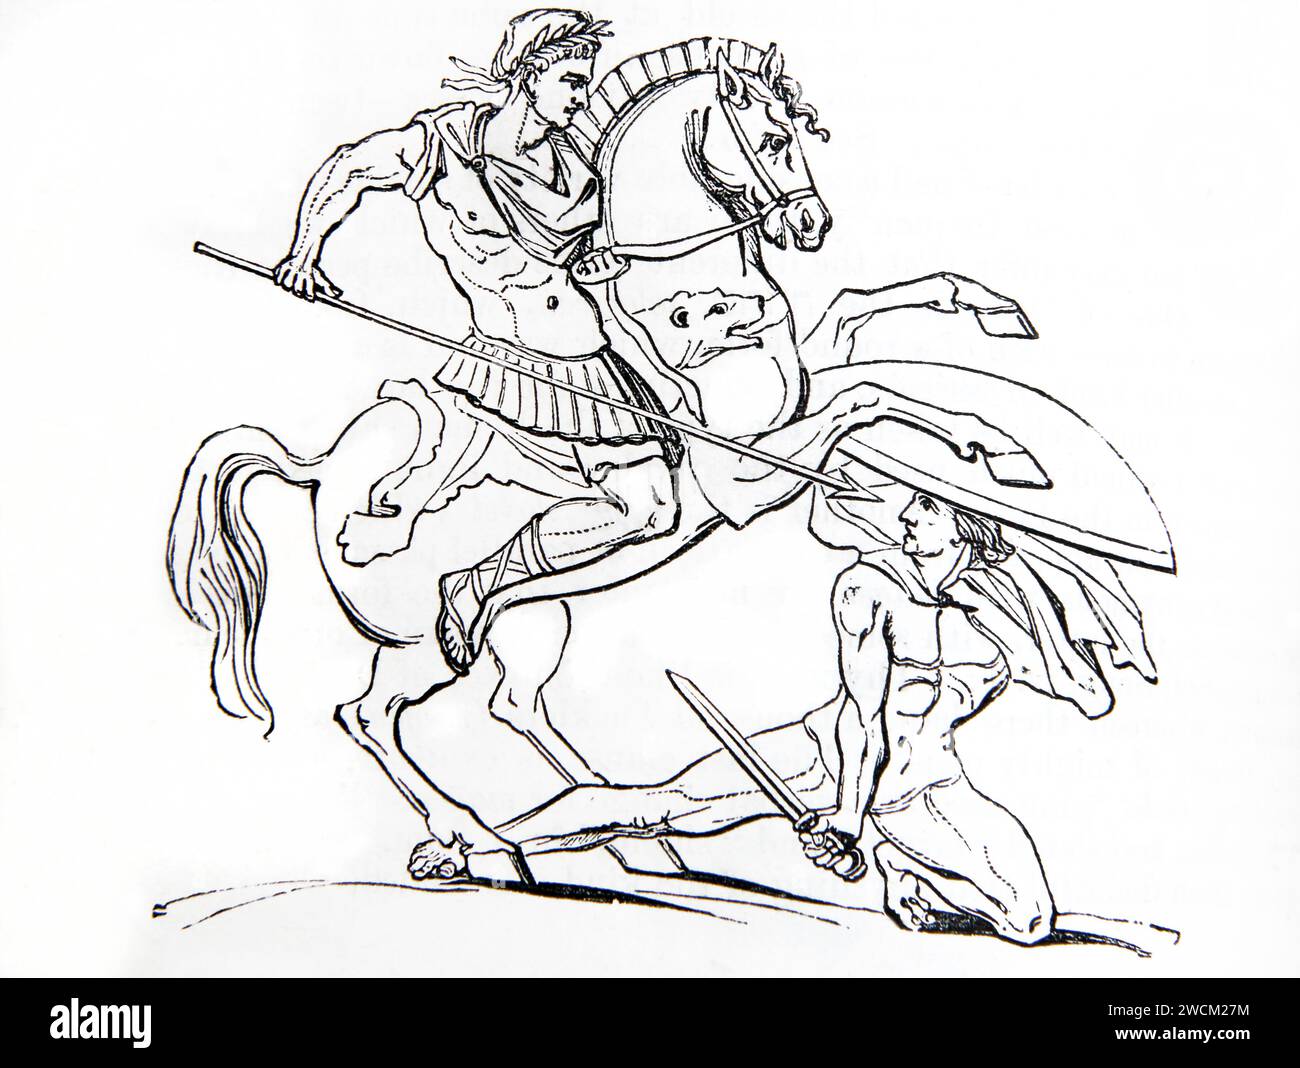 Gravure sur bois d'un soldat romain attaquant un barbare protégé par un grand bouclier de la Bible de famille illustrée Banque D'Images